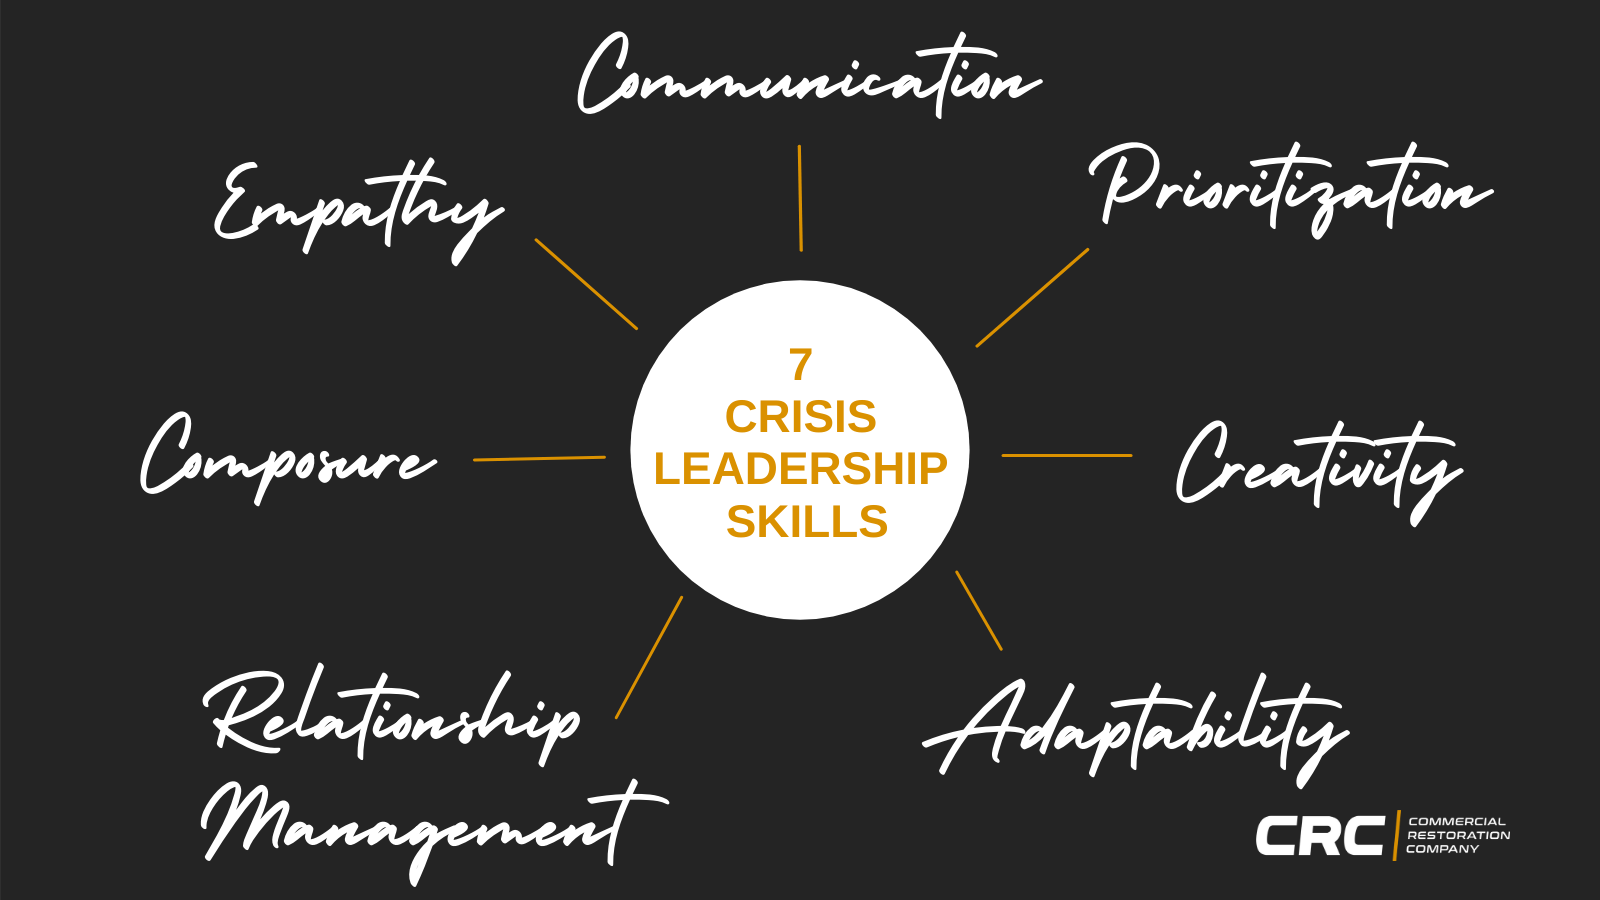 Crisis Leadership Skills